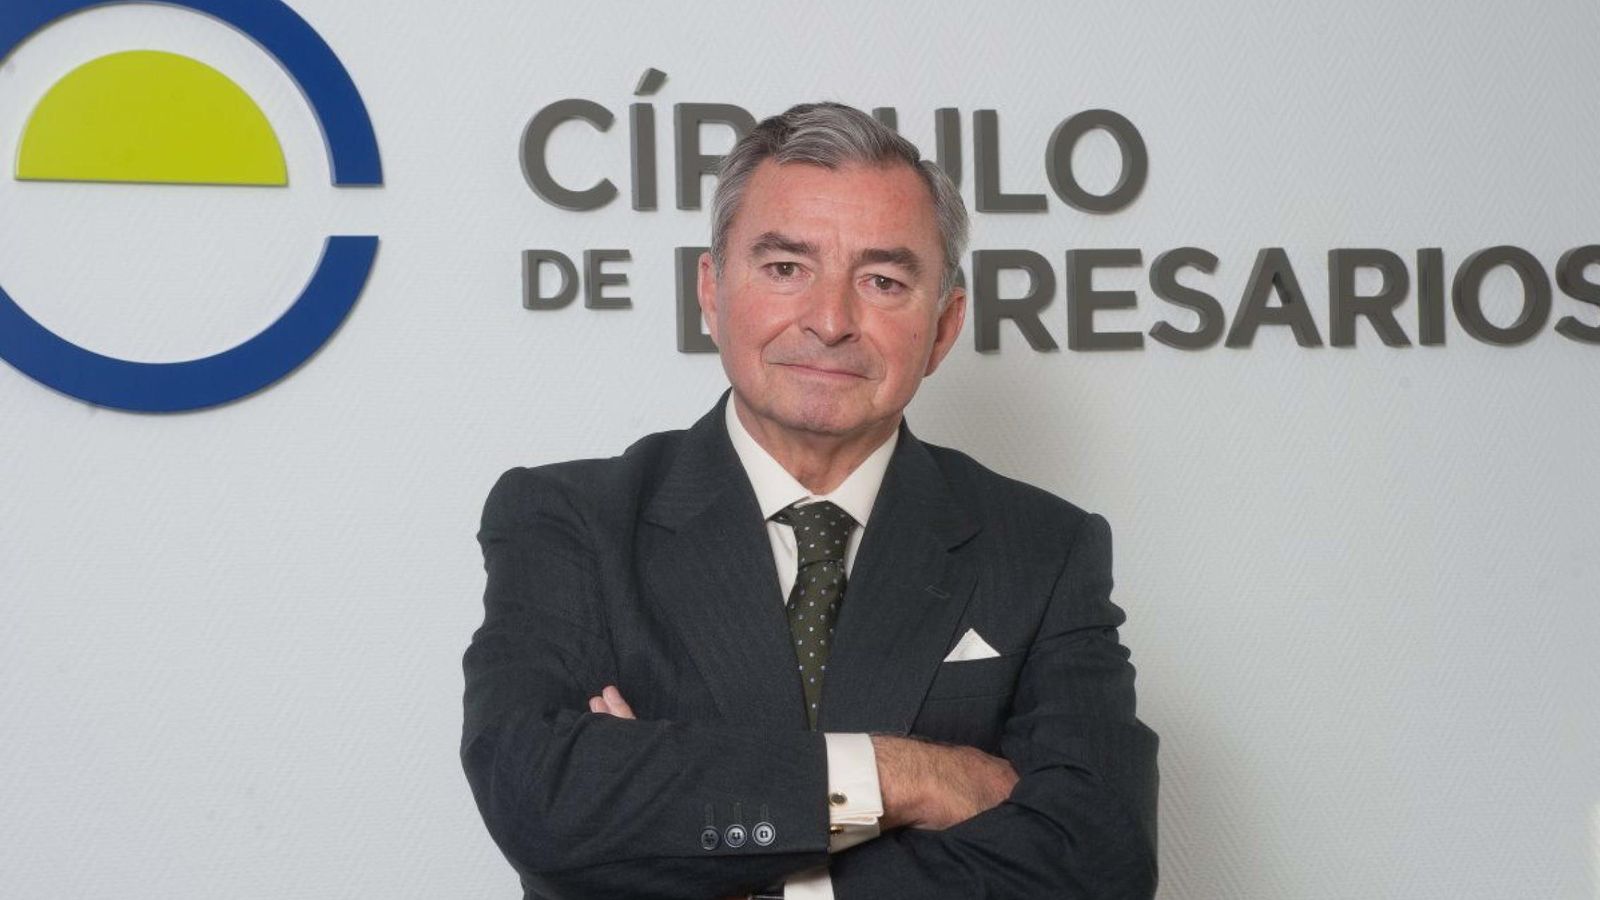 Foto: El presidente del Círculo de Empresarios, Javier Vega de Seoane. (EFE)